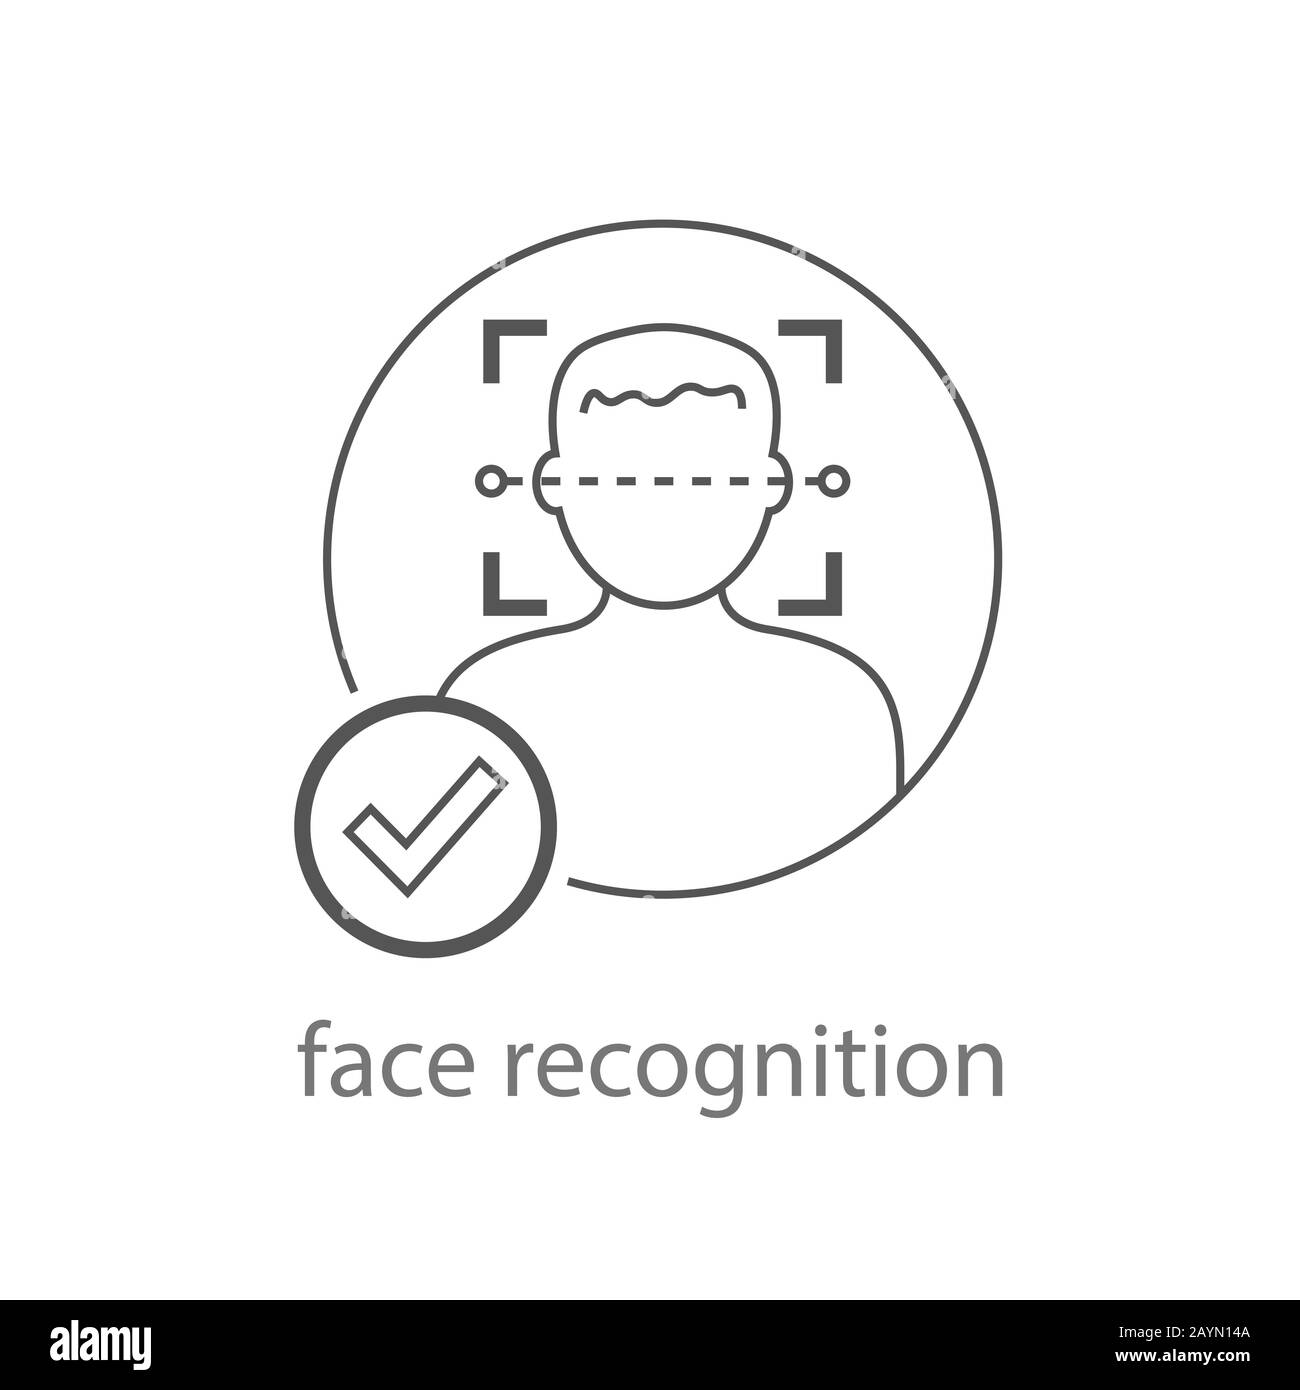 Vecteur d'icône de reconnaissance des faces. Illustration De L'Identification Faciale. Logo De Détection De Visages. Symbole De Face De L'Homme De Numérisation. SPE 10 Illustration de Vecteur